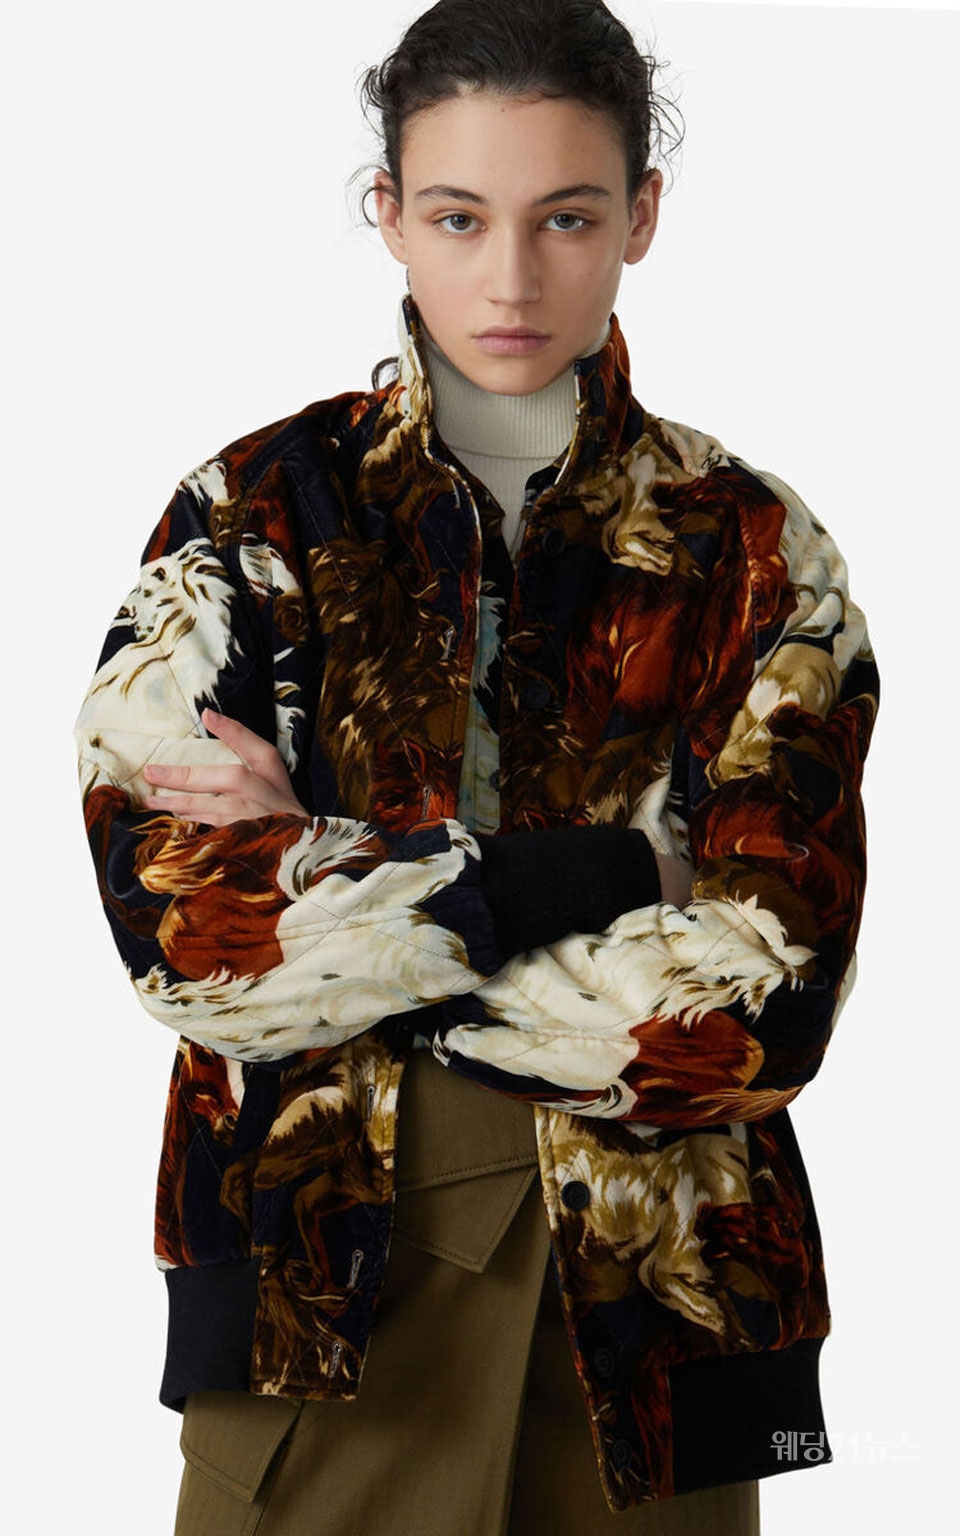 사진 : 겐조(KENZO), 20FW 시즌 슈보(Chevaux) 패턴의 퀼티드 벨벳 봄버 재킷